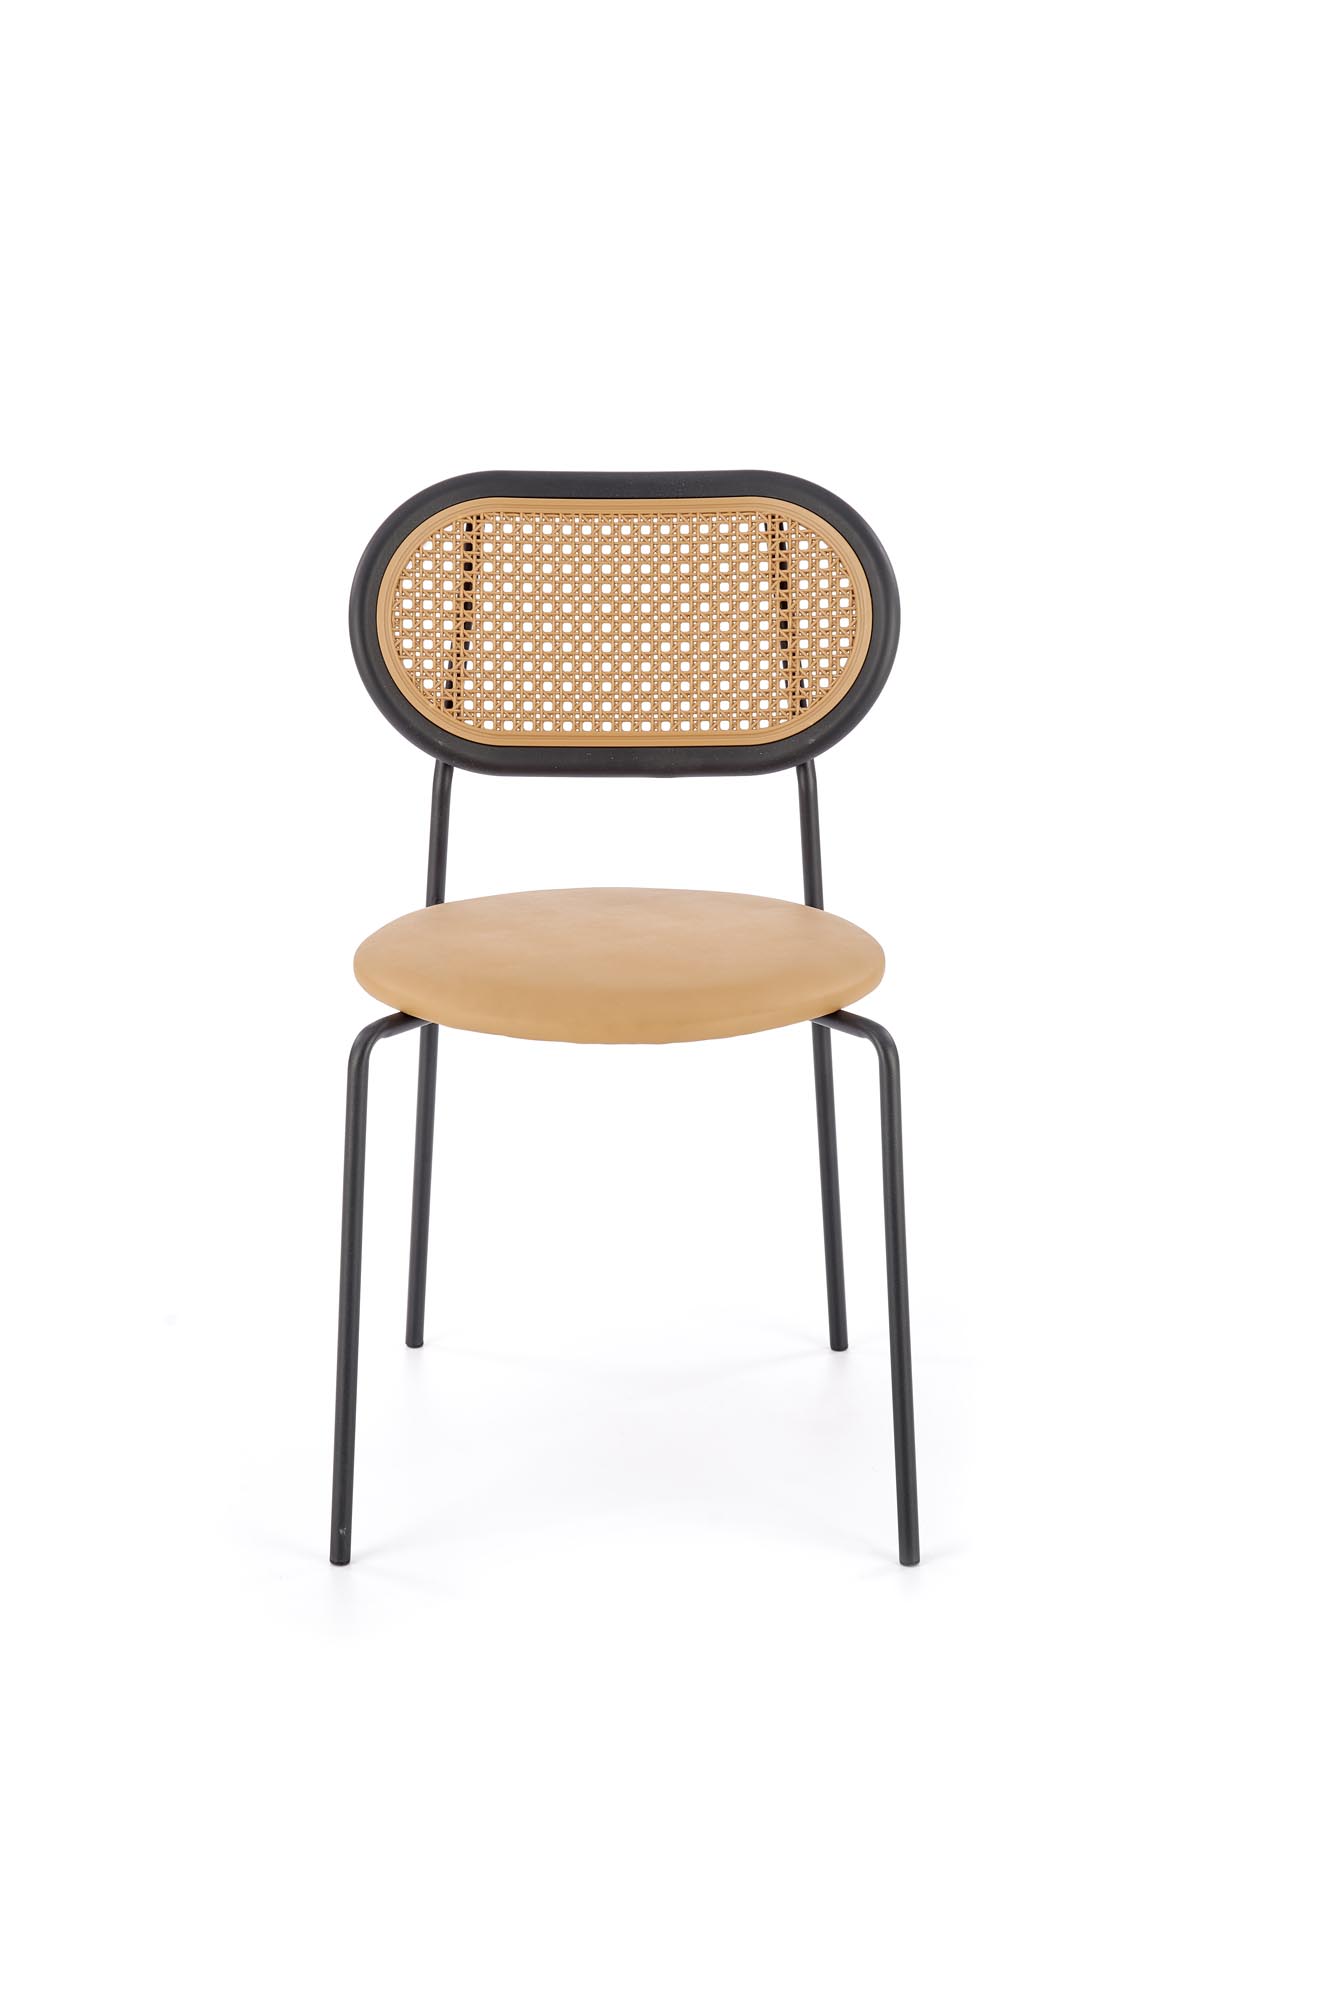 K524 Židle jasný Hnědý židle k524 - jasný Hnědý